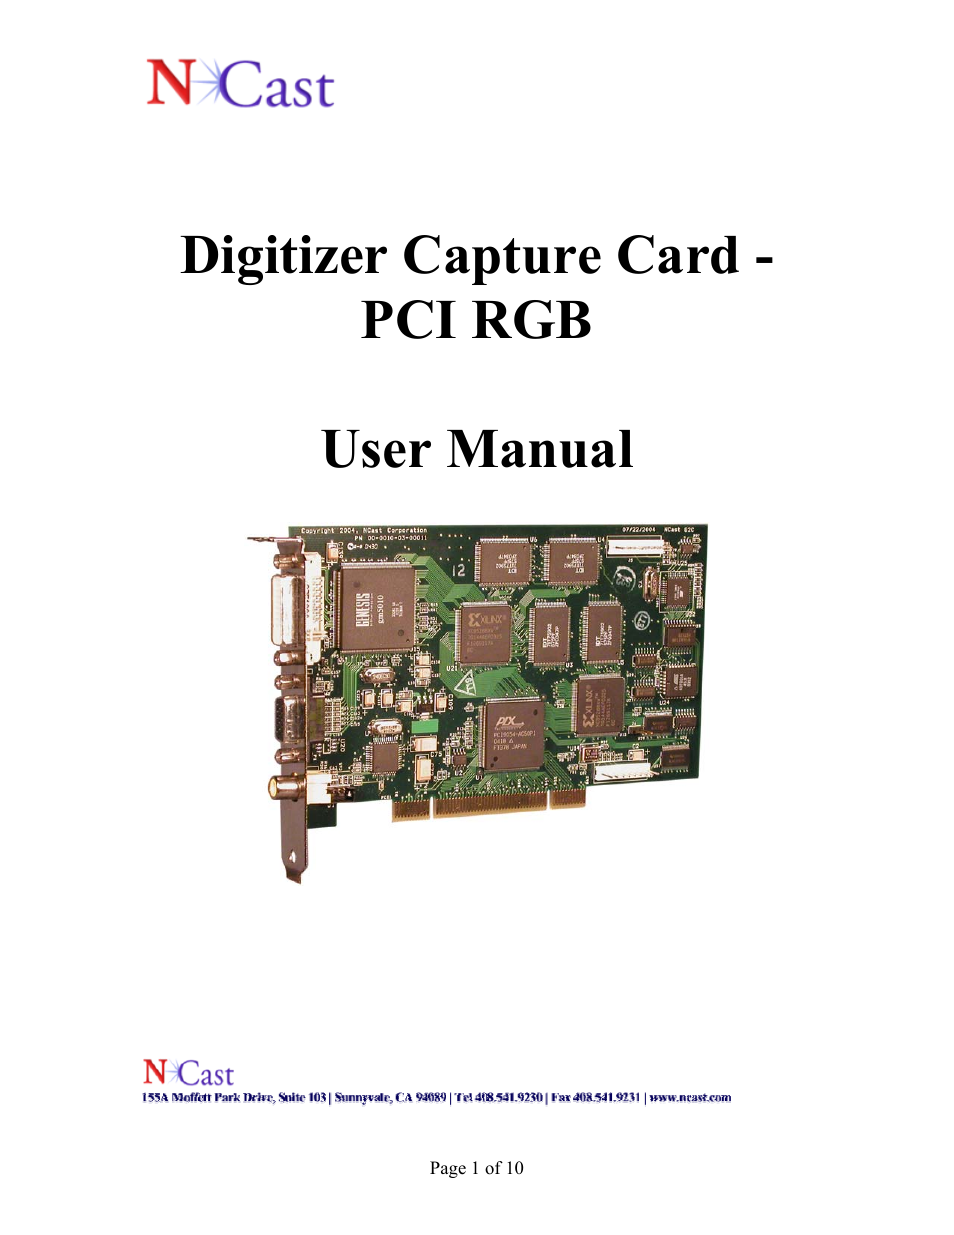 Digitizer Capture Card v2.0